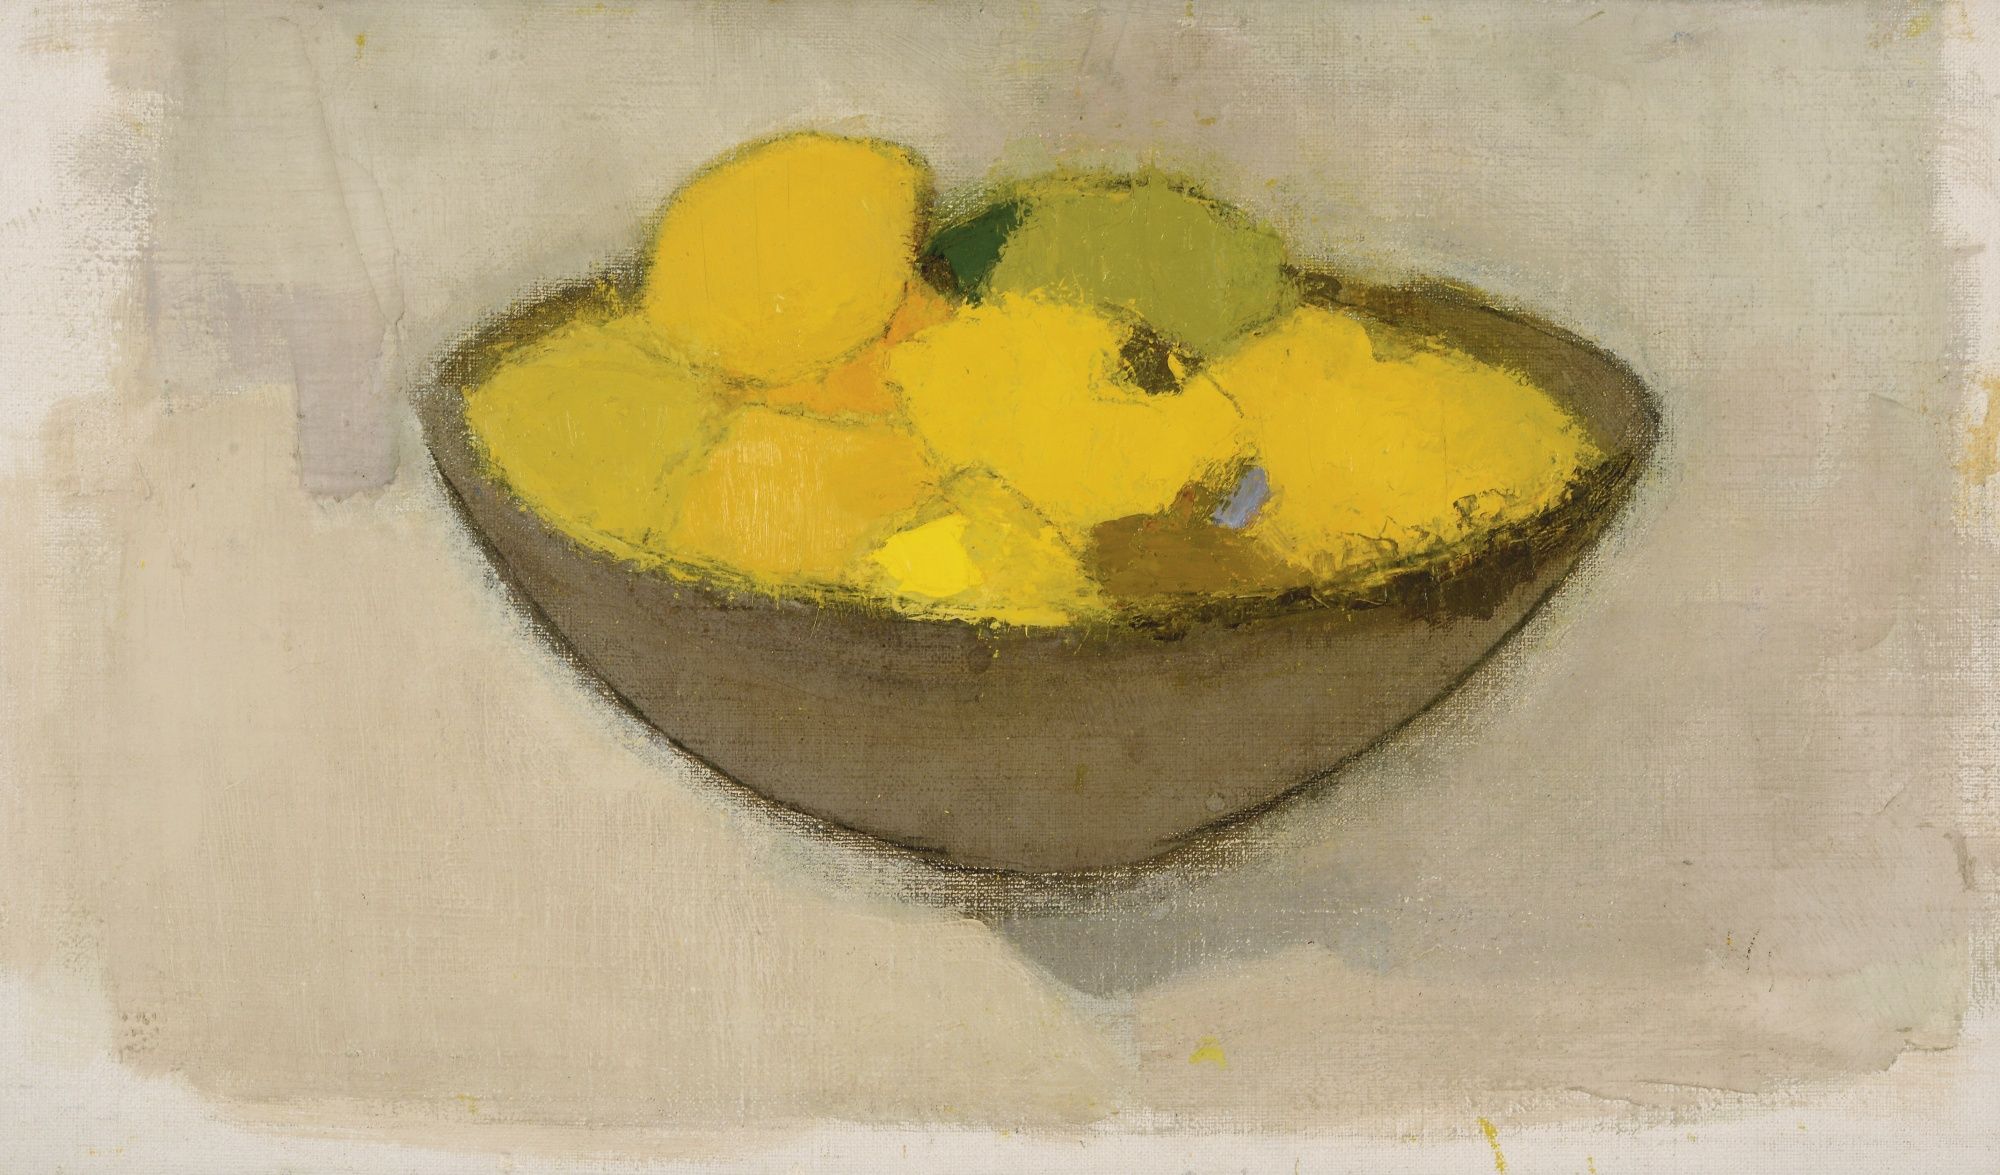 바구니에 담긴 레몬 by Helene Schjerfbeck - 1934년 - 34.5 x 59.5 cm 